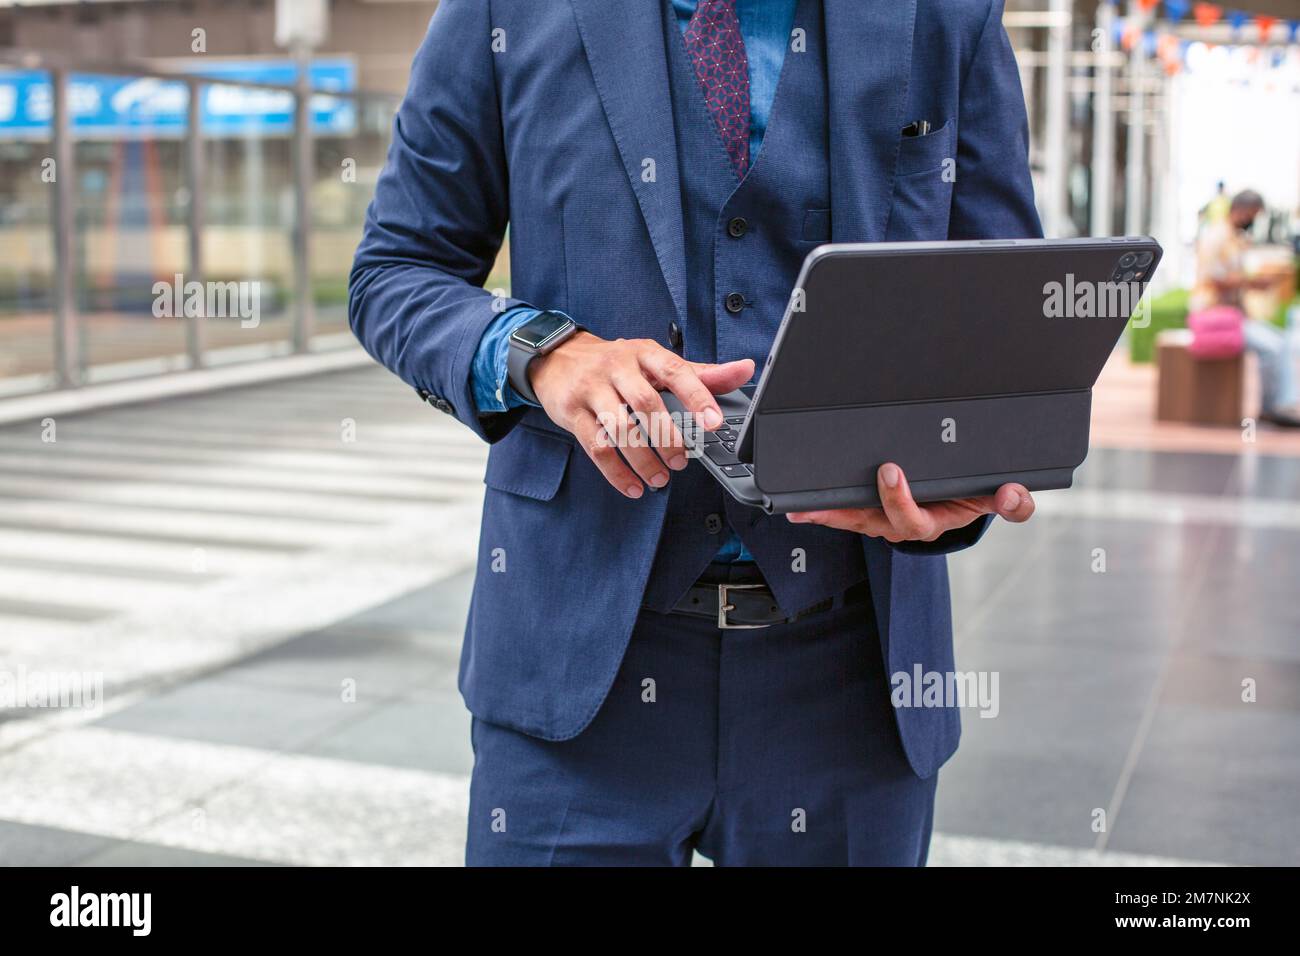 Ein junger Geschäftsmann in einem blauen Anzug, der unterwegs in einer Innenstadt ist, steht und benutzt sein digitales Tablet. Stockfoto